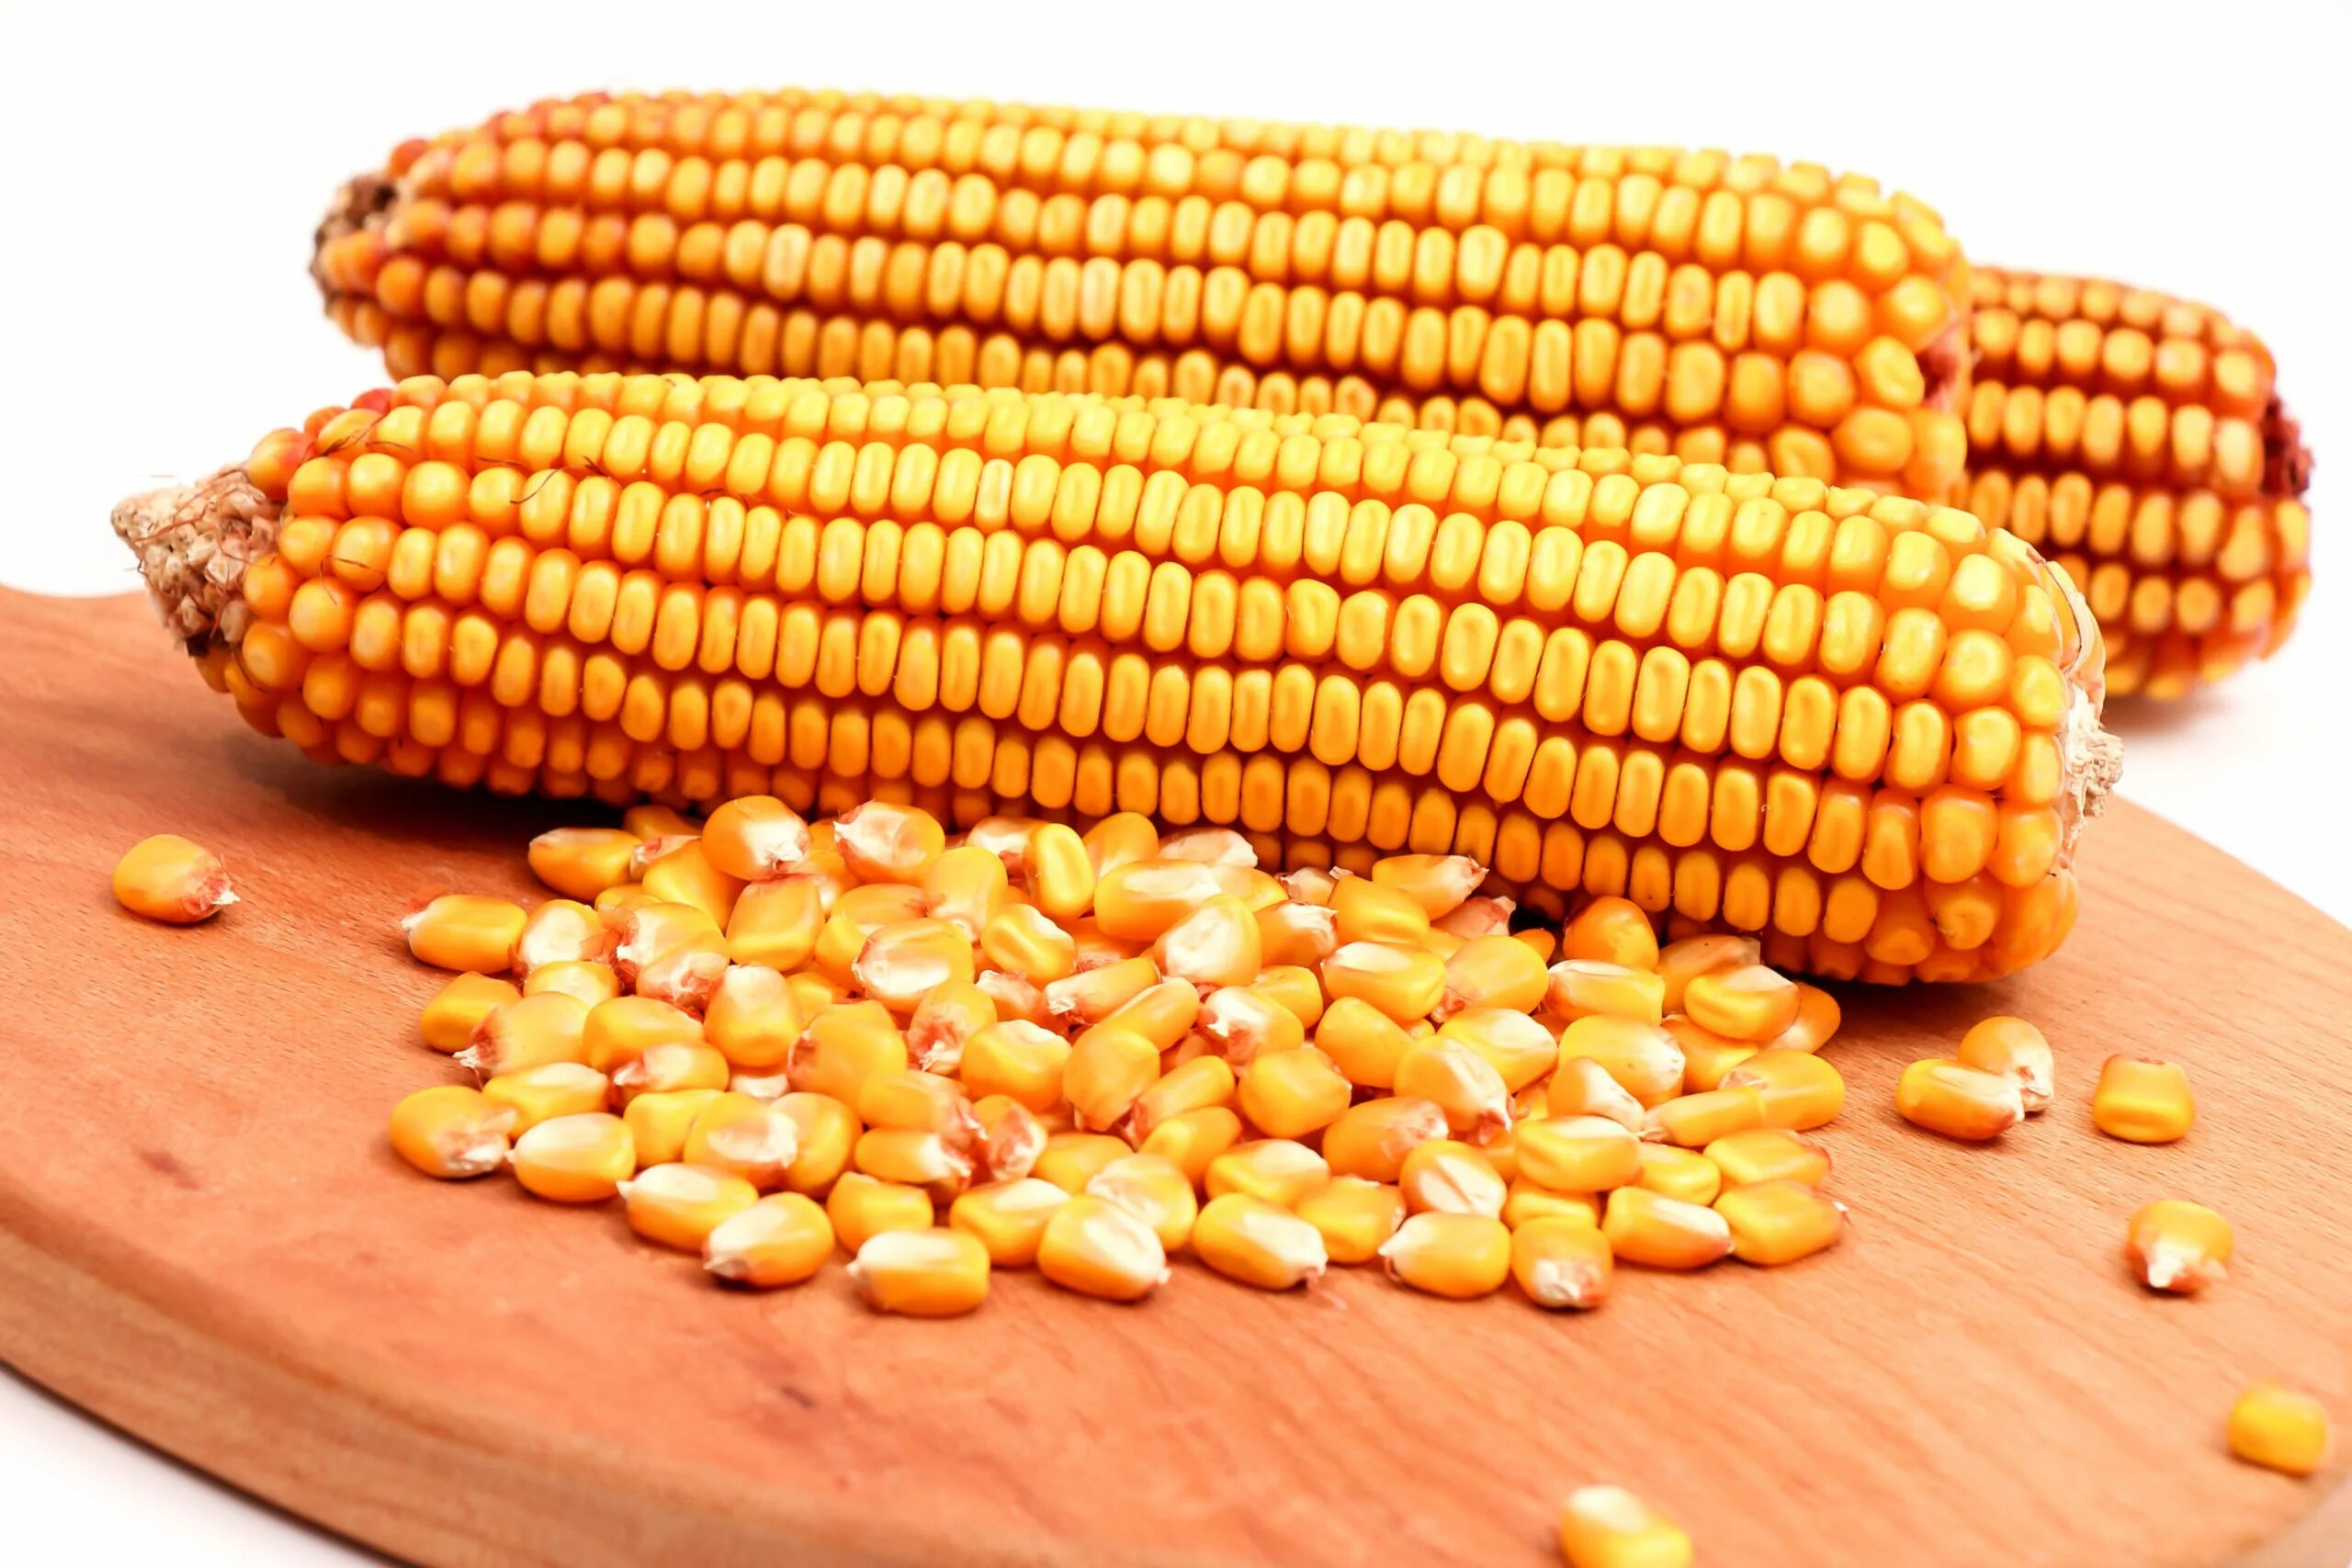 Corn кукуруза. Кукуруза Маис. Кукуруза в початках кормовая. Кукуруза семенная кормовая. Семена кукурузы кормовой.